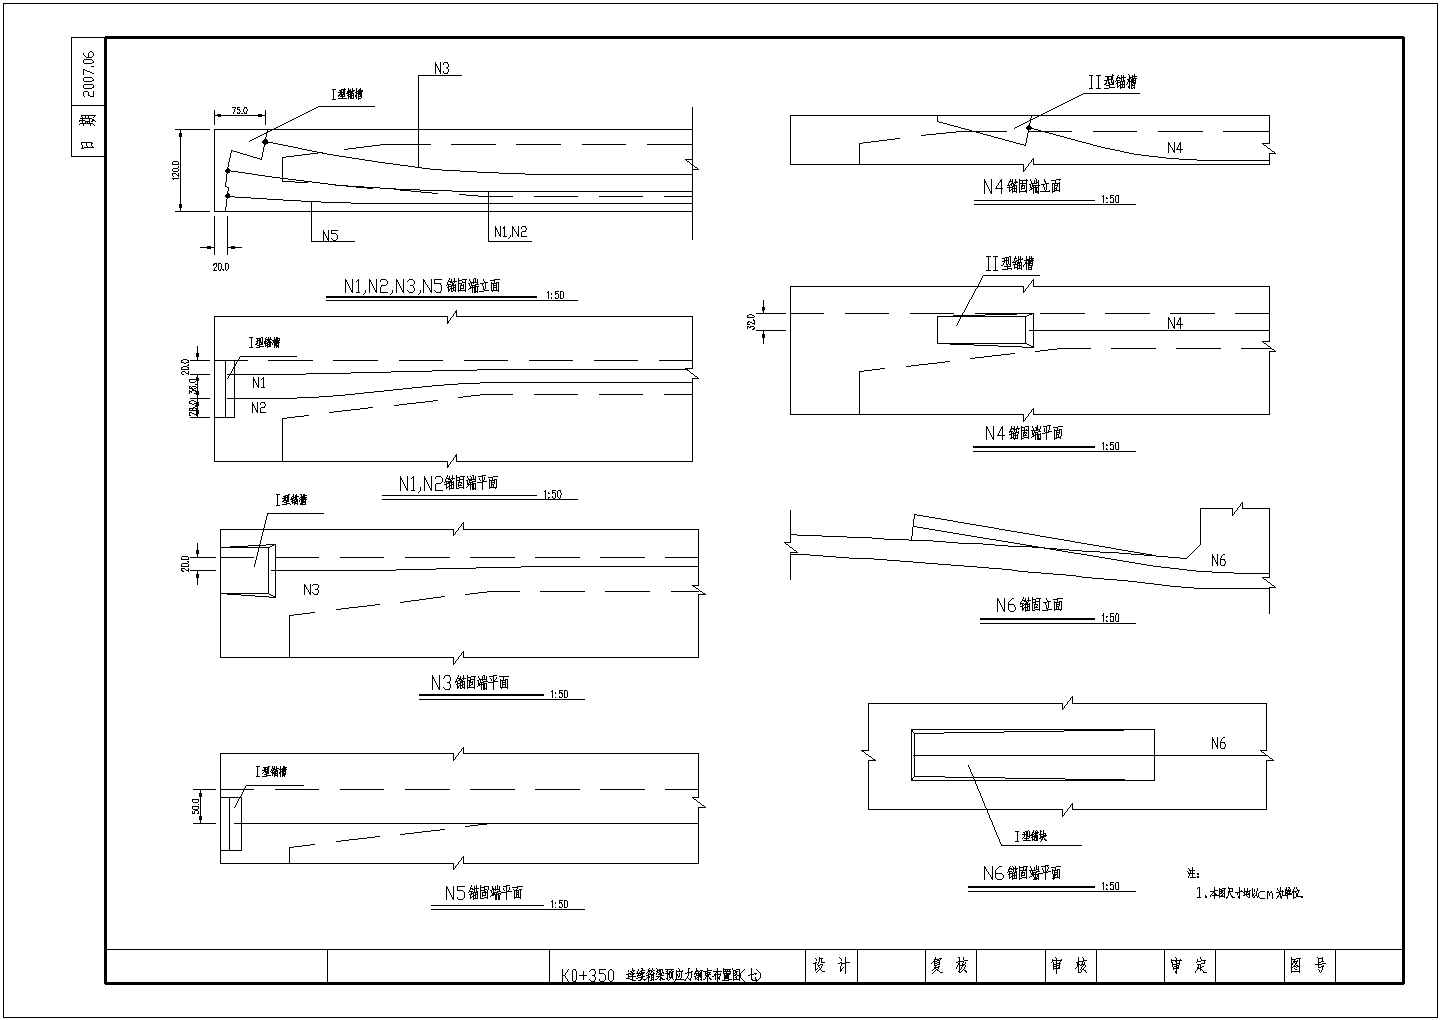 【黑龙江】76米长预应力钢筋混凝土连续箱梁桥施工图